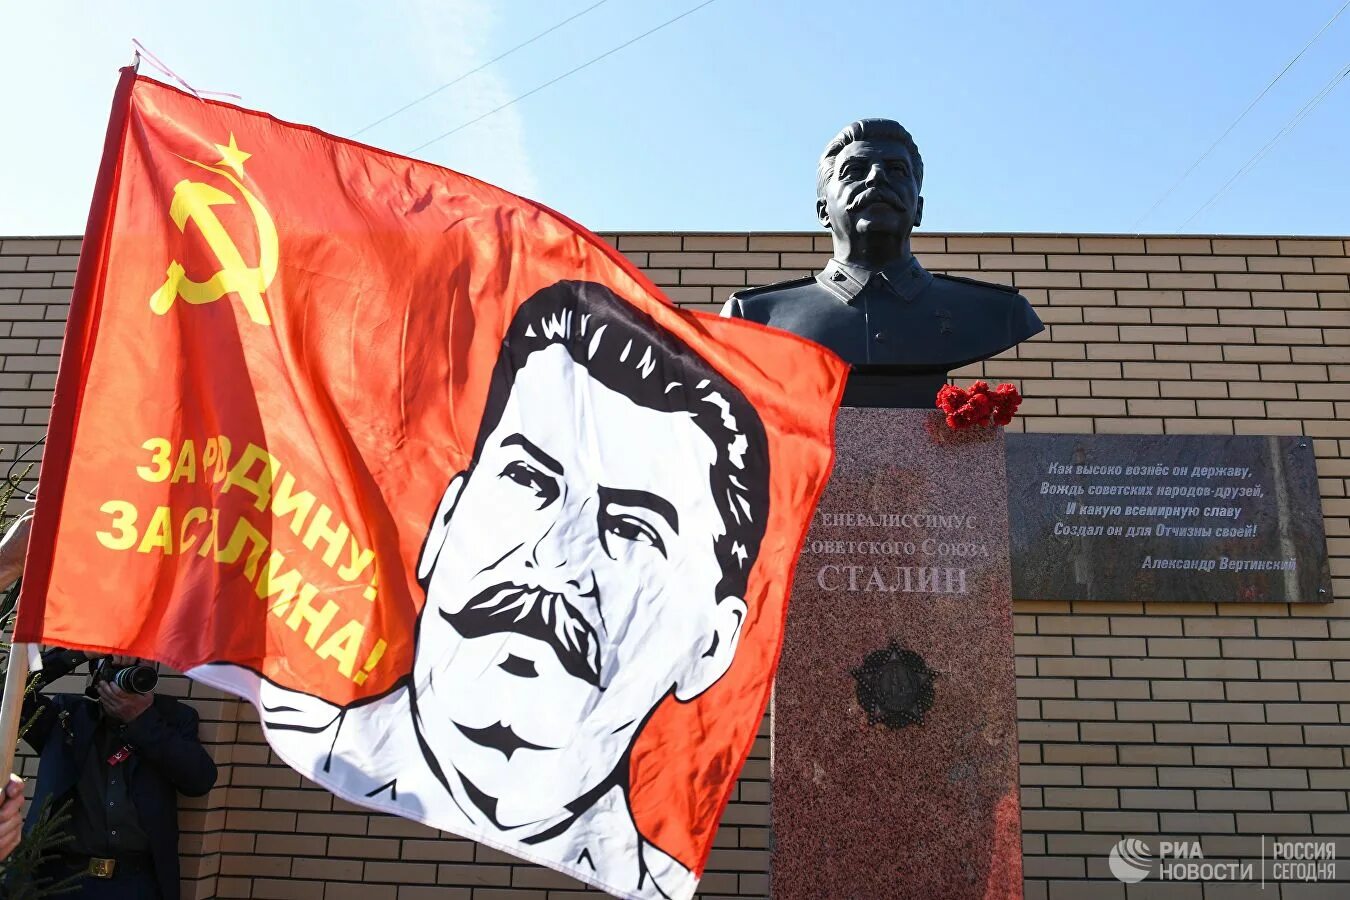 Ссср сталин старался союз распался. Сталин. Сталин Союз распался. Слава Сталину.